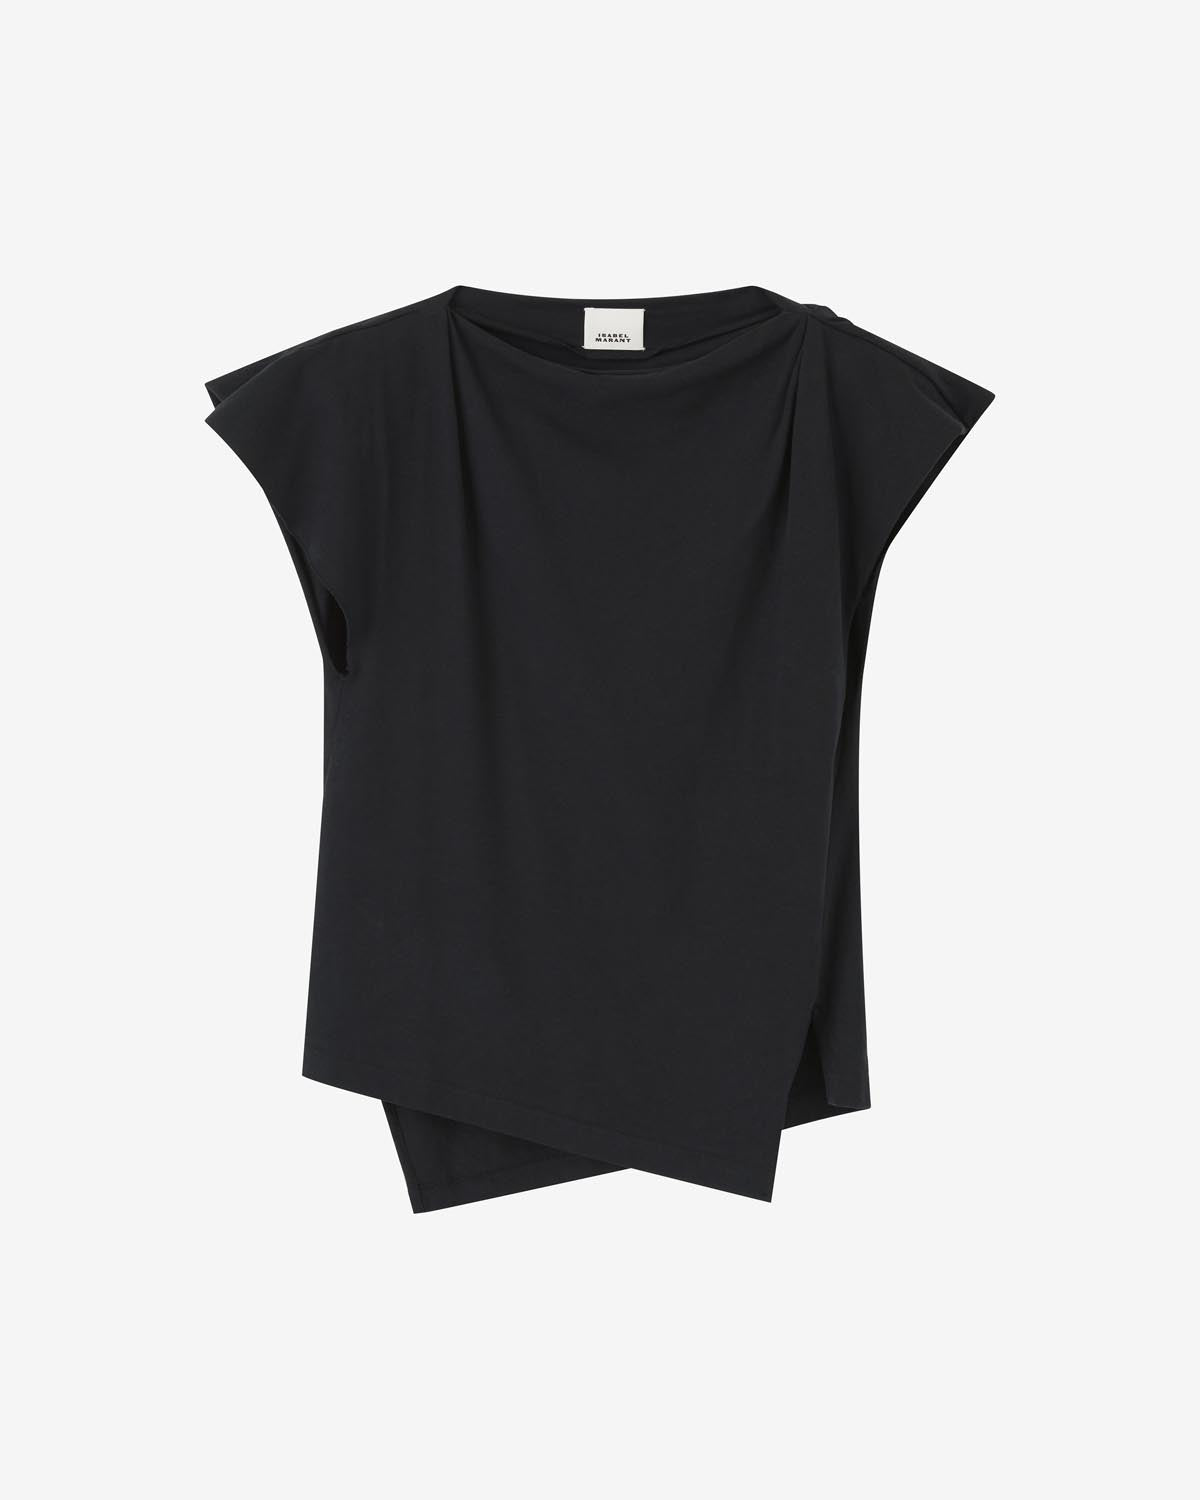 Sebani tシャツ Woman 黒 9